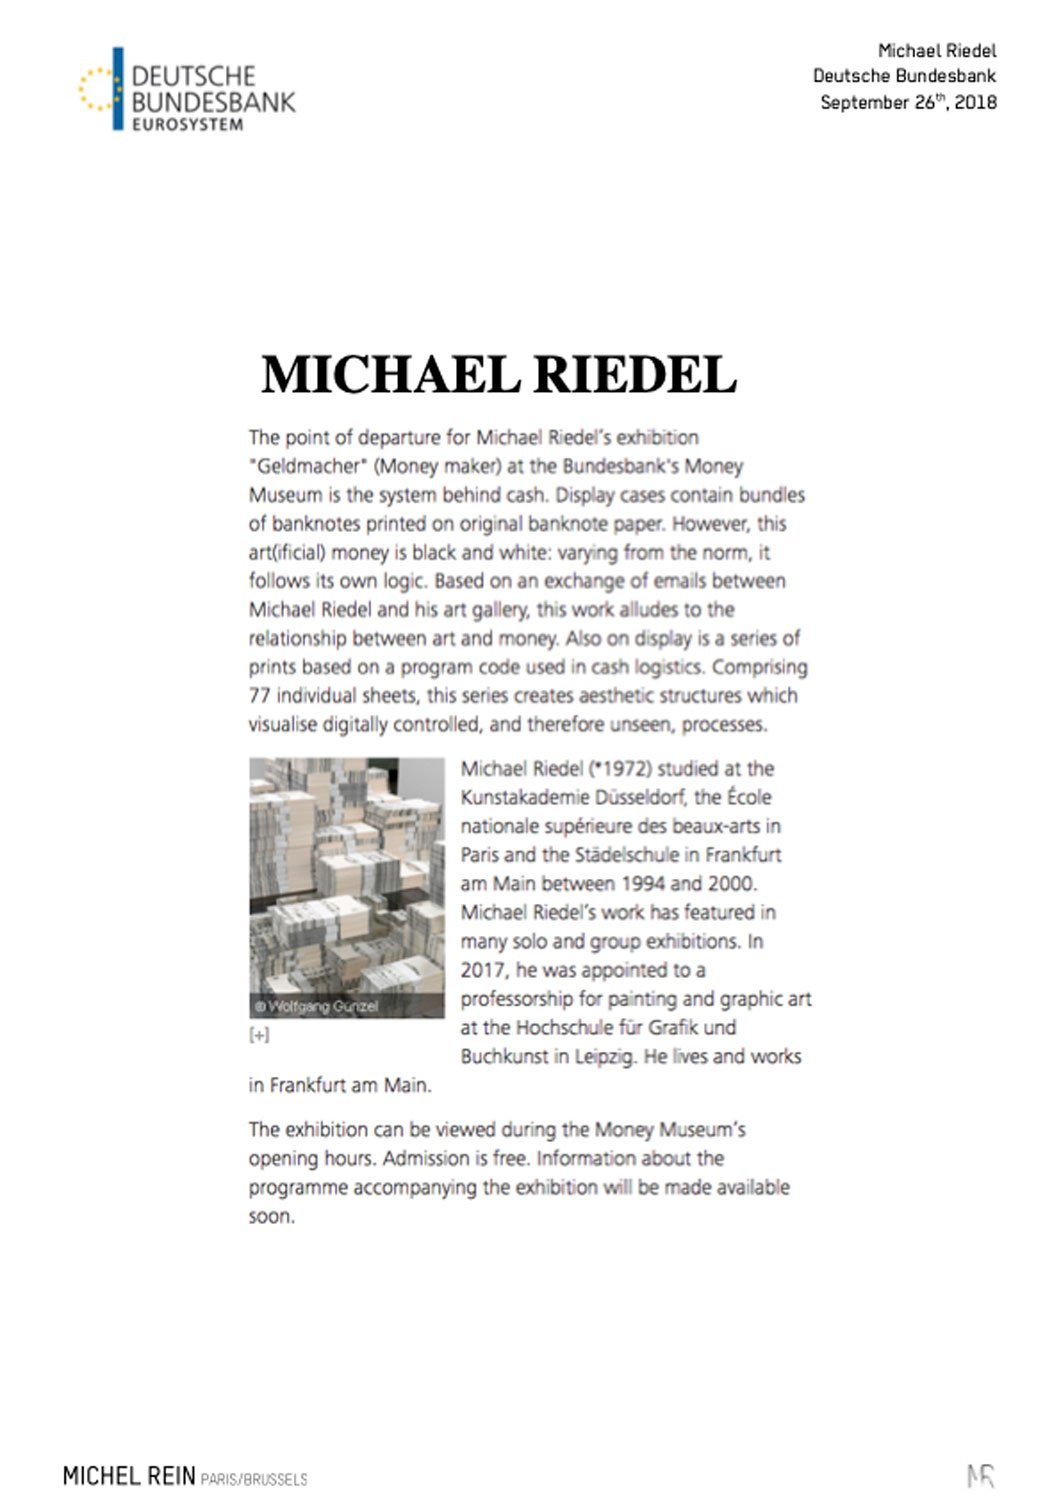 Michael Riedel - Deutsche Bundesbank